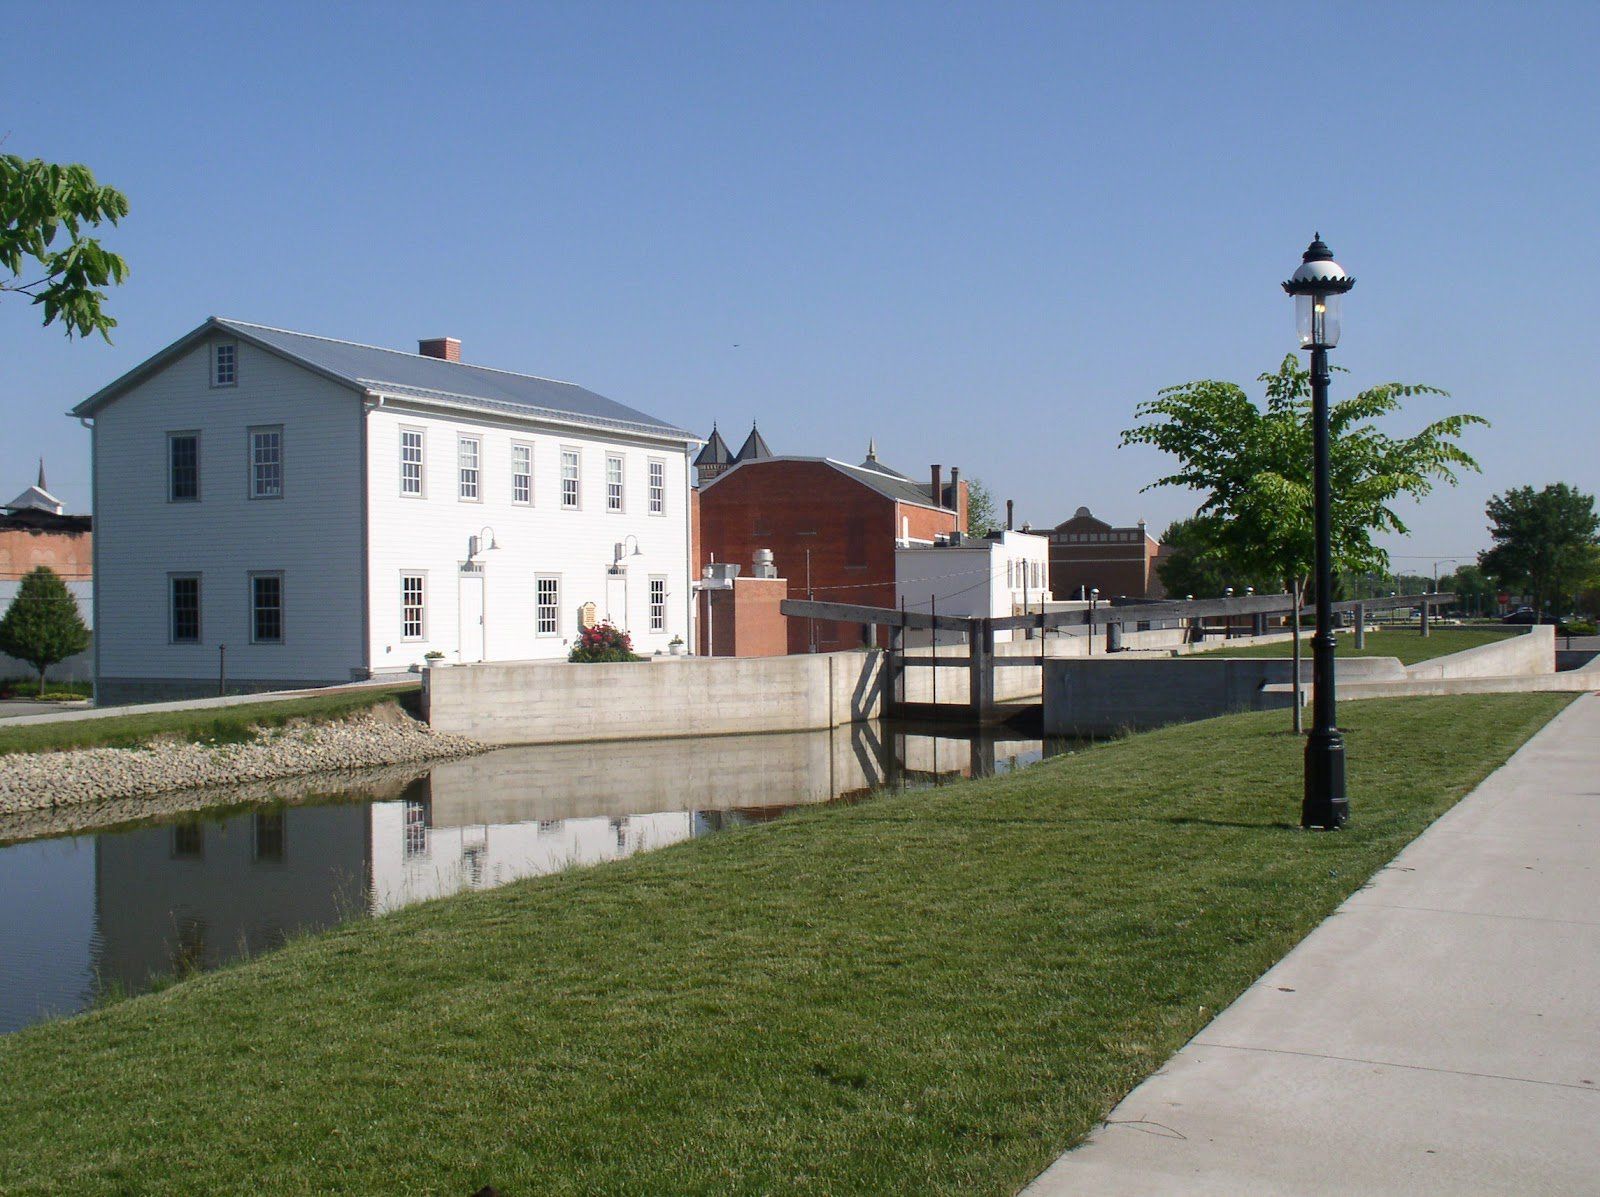 Lock 1 in New Bremen, Ohio c. 2020